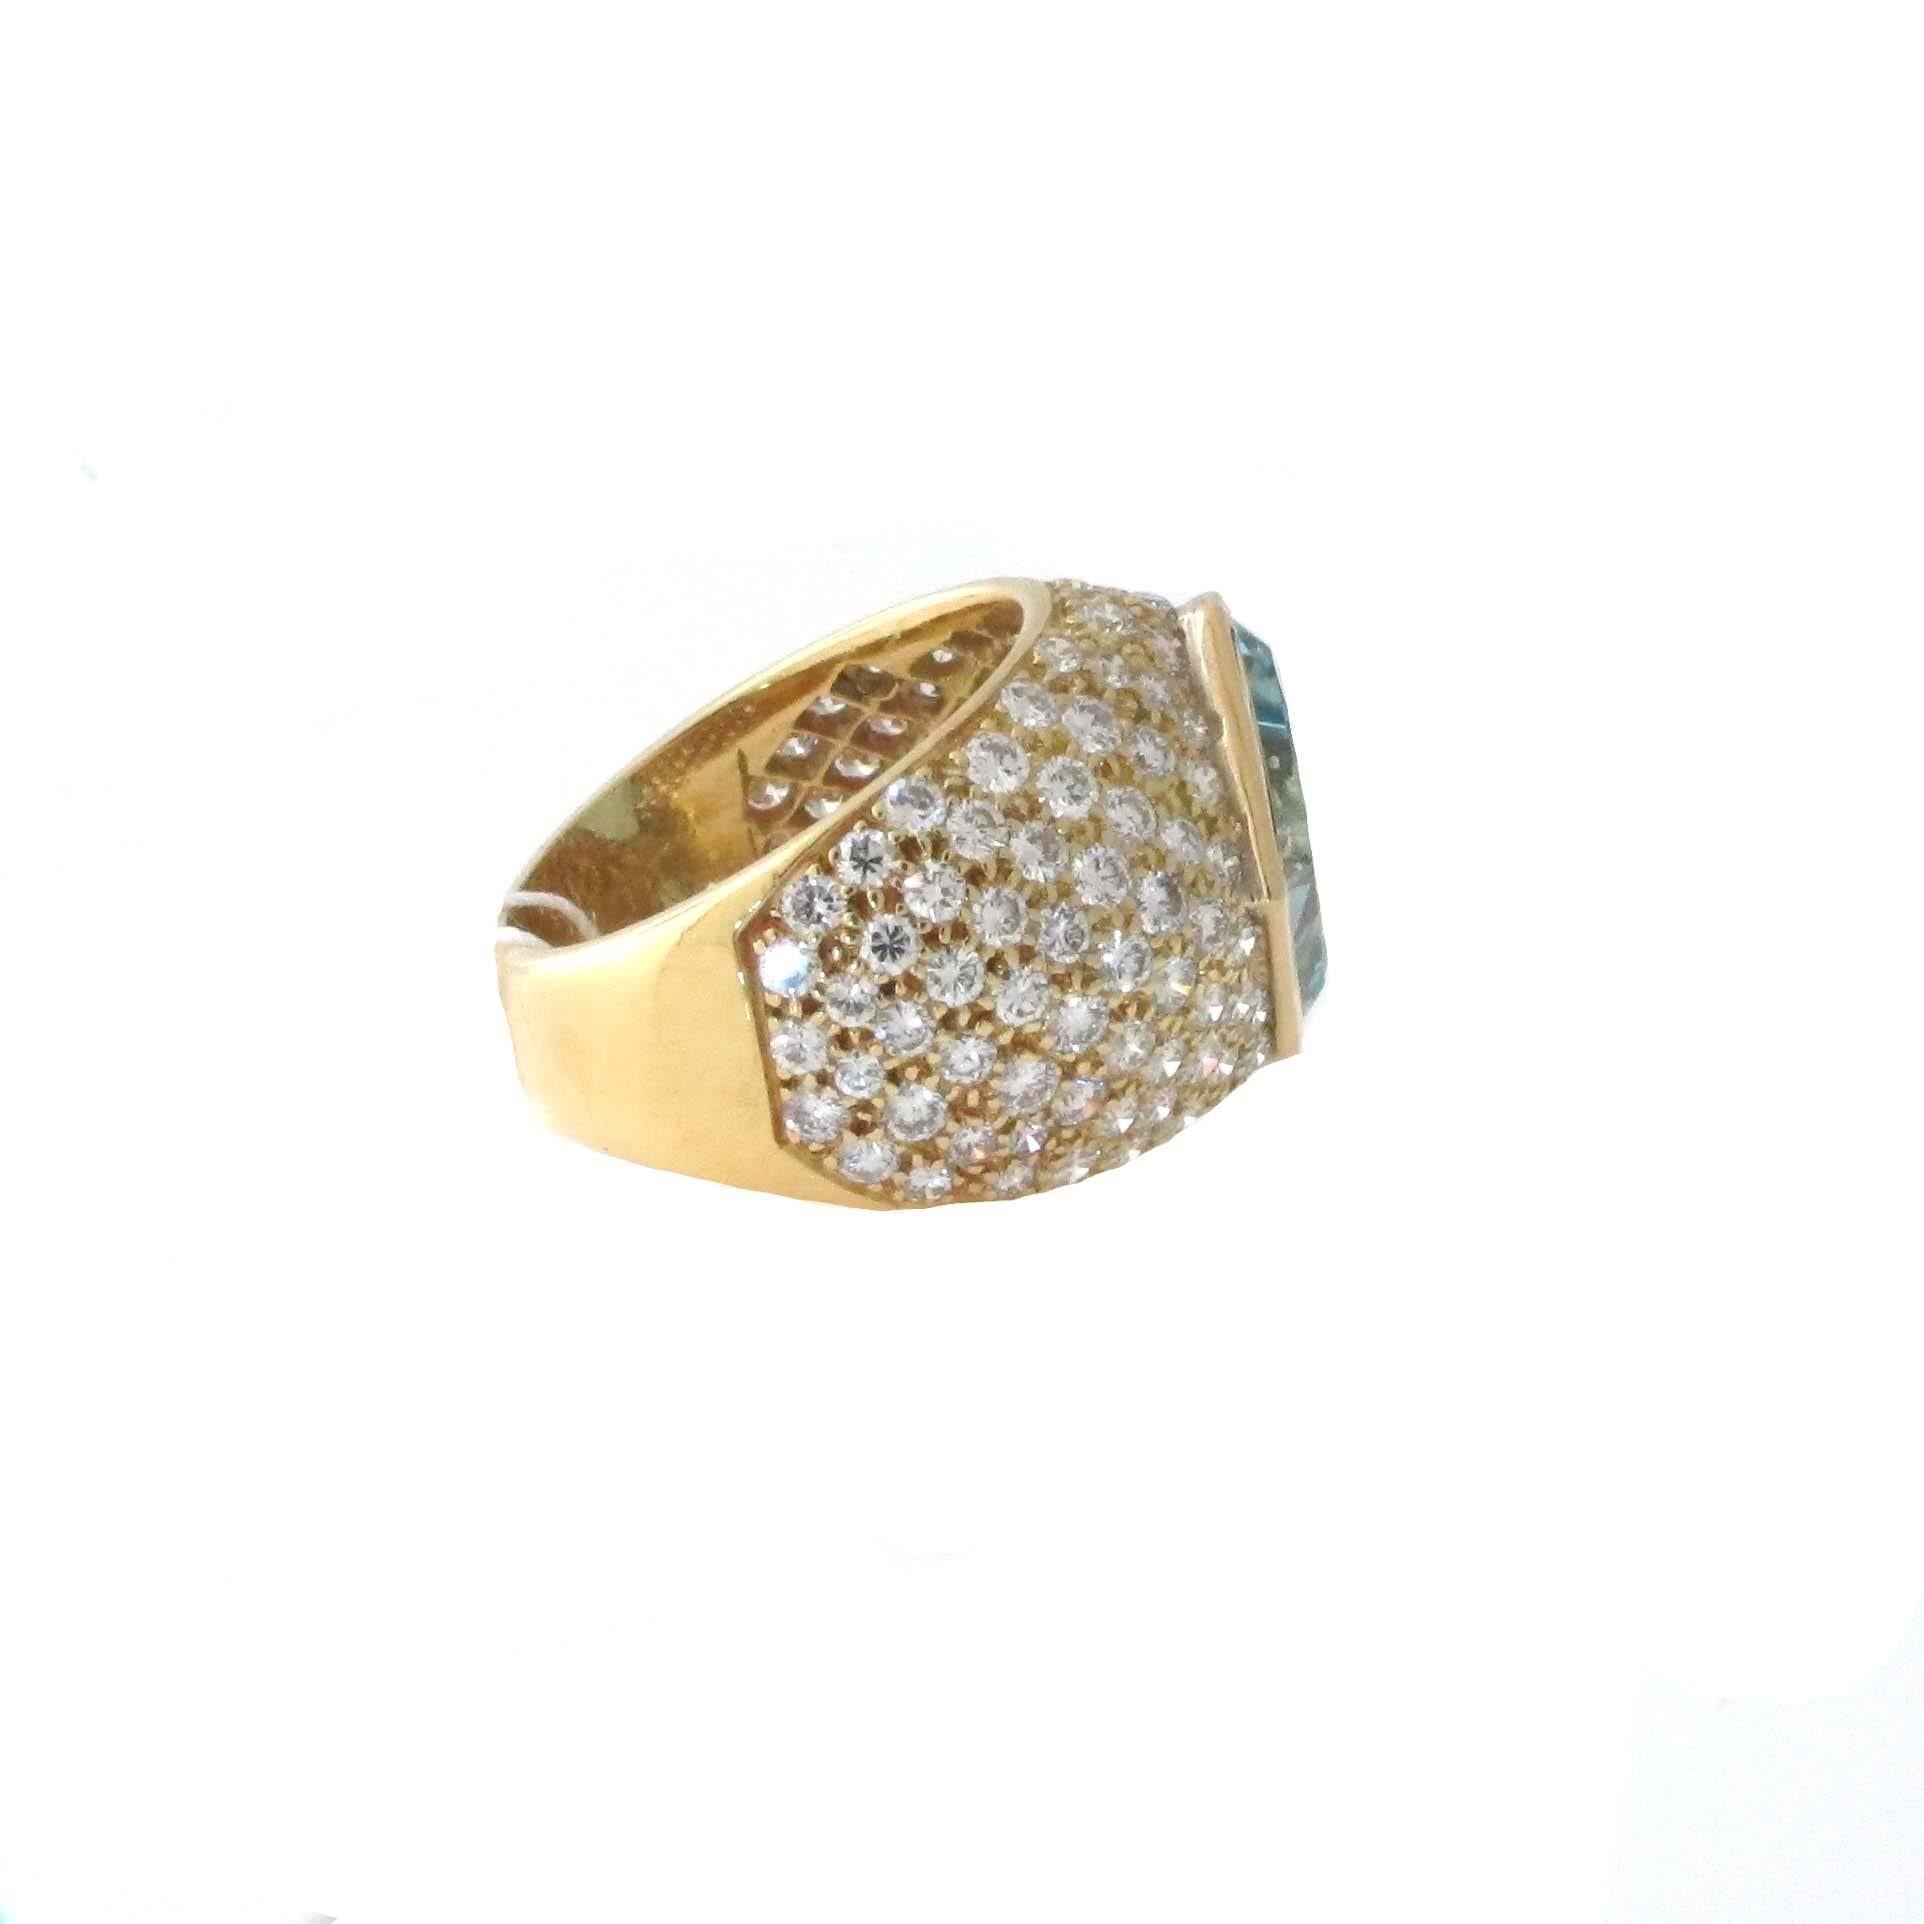 Modern 3.74 Carat Aquamarine and Diamond Ring Set in 18 Karat Yellow Gold